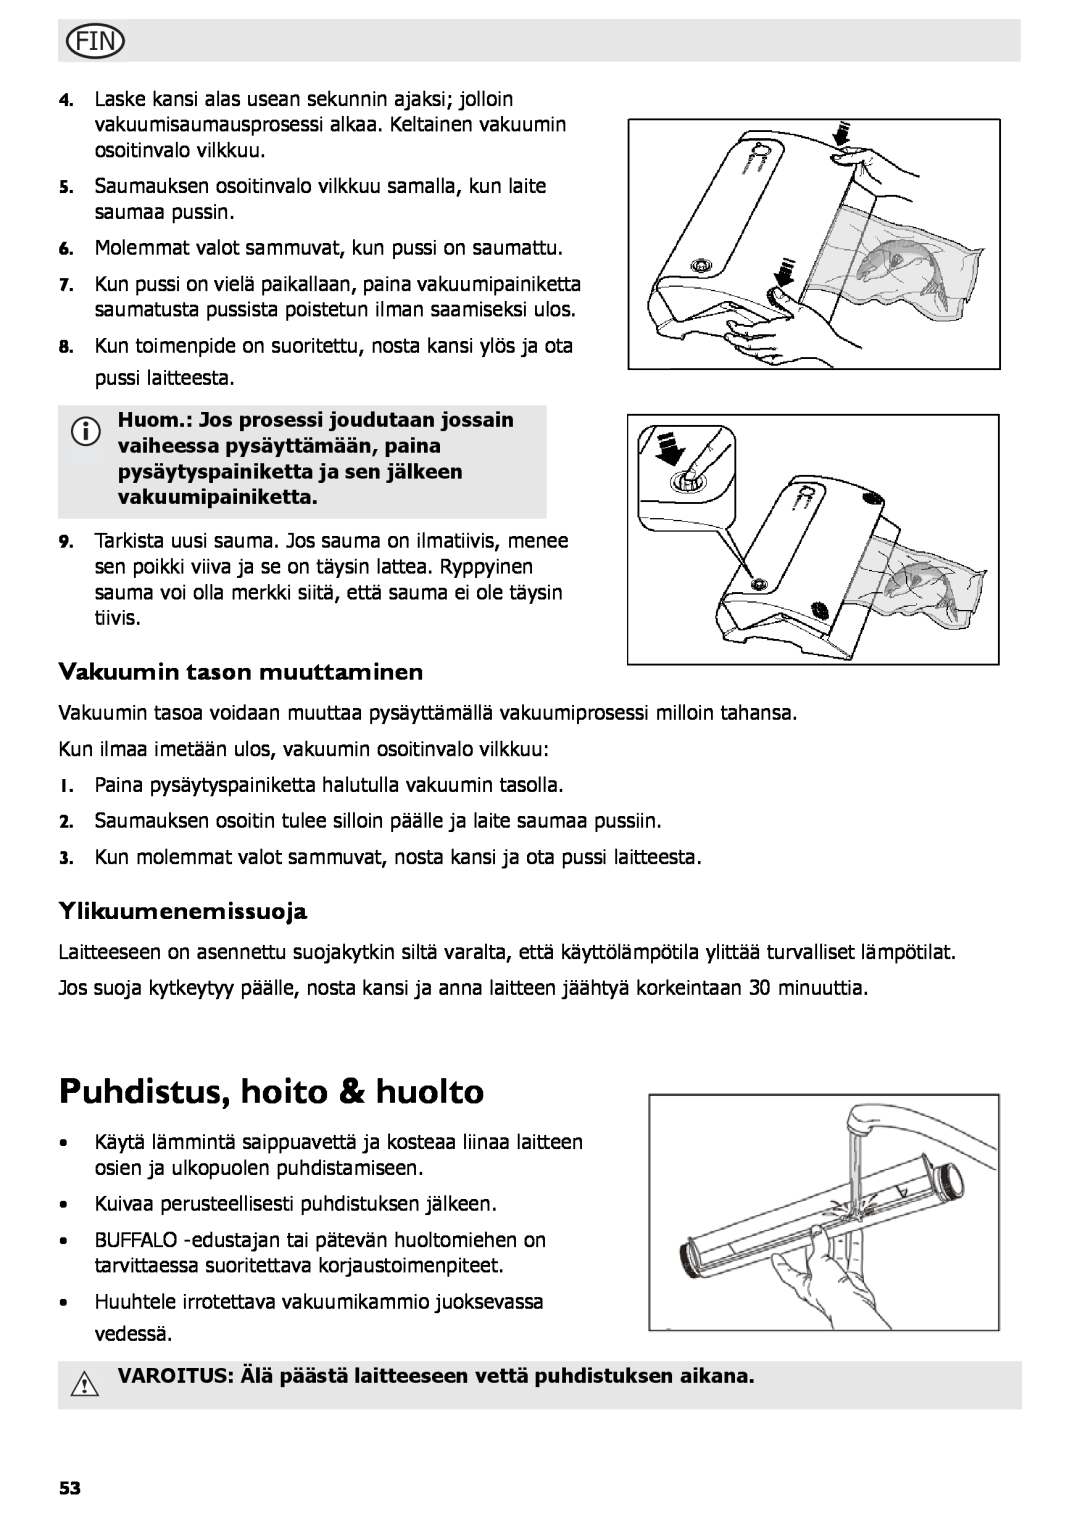 Buffalo Tools S097 instruction manual Puhdistus, hoito & huolto, Vakuumin tason muuttaminen, Ylikuumenemissuoja 